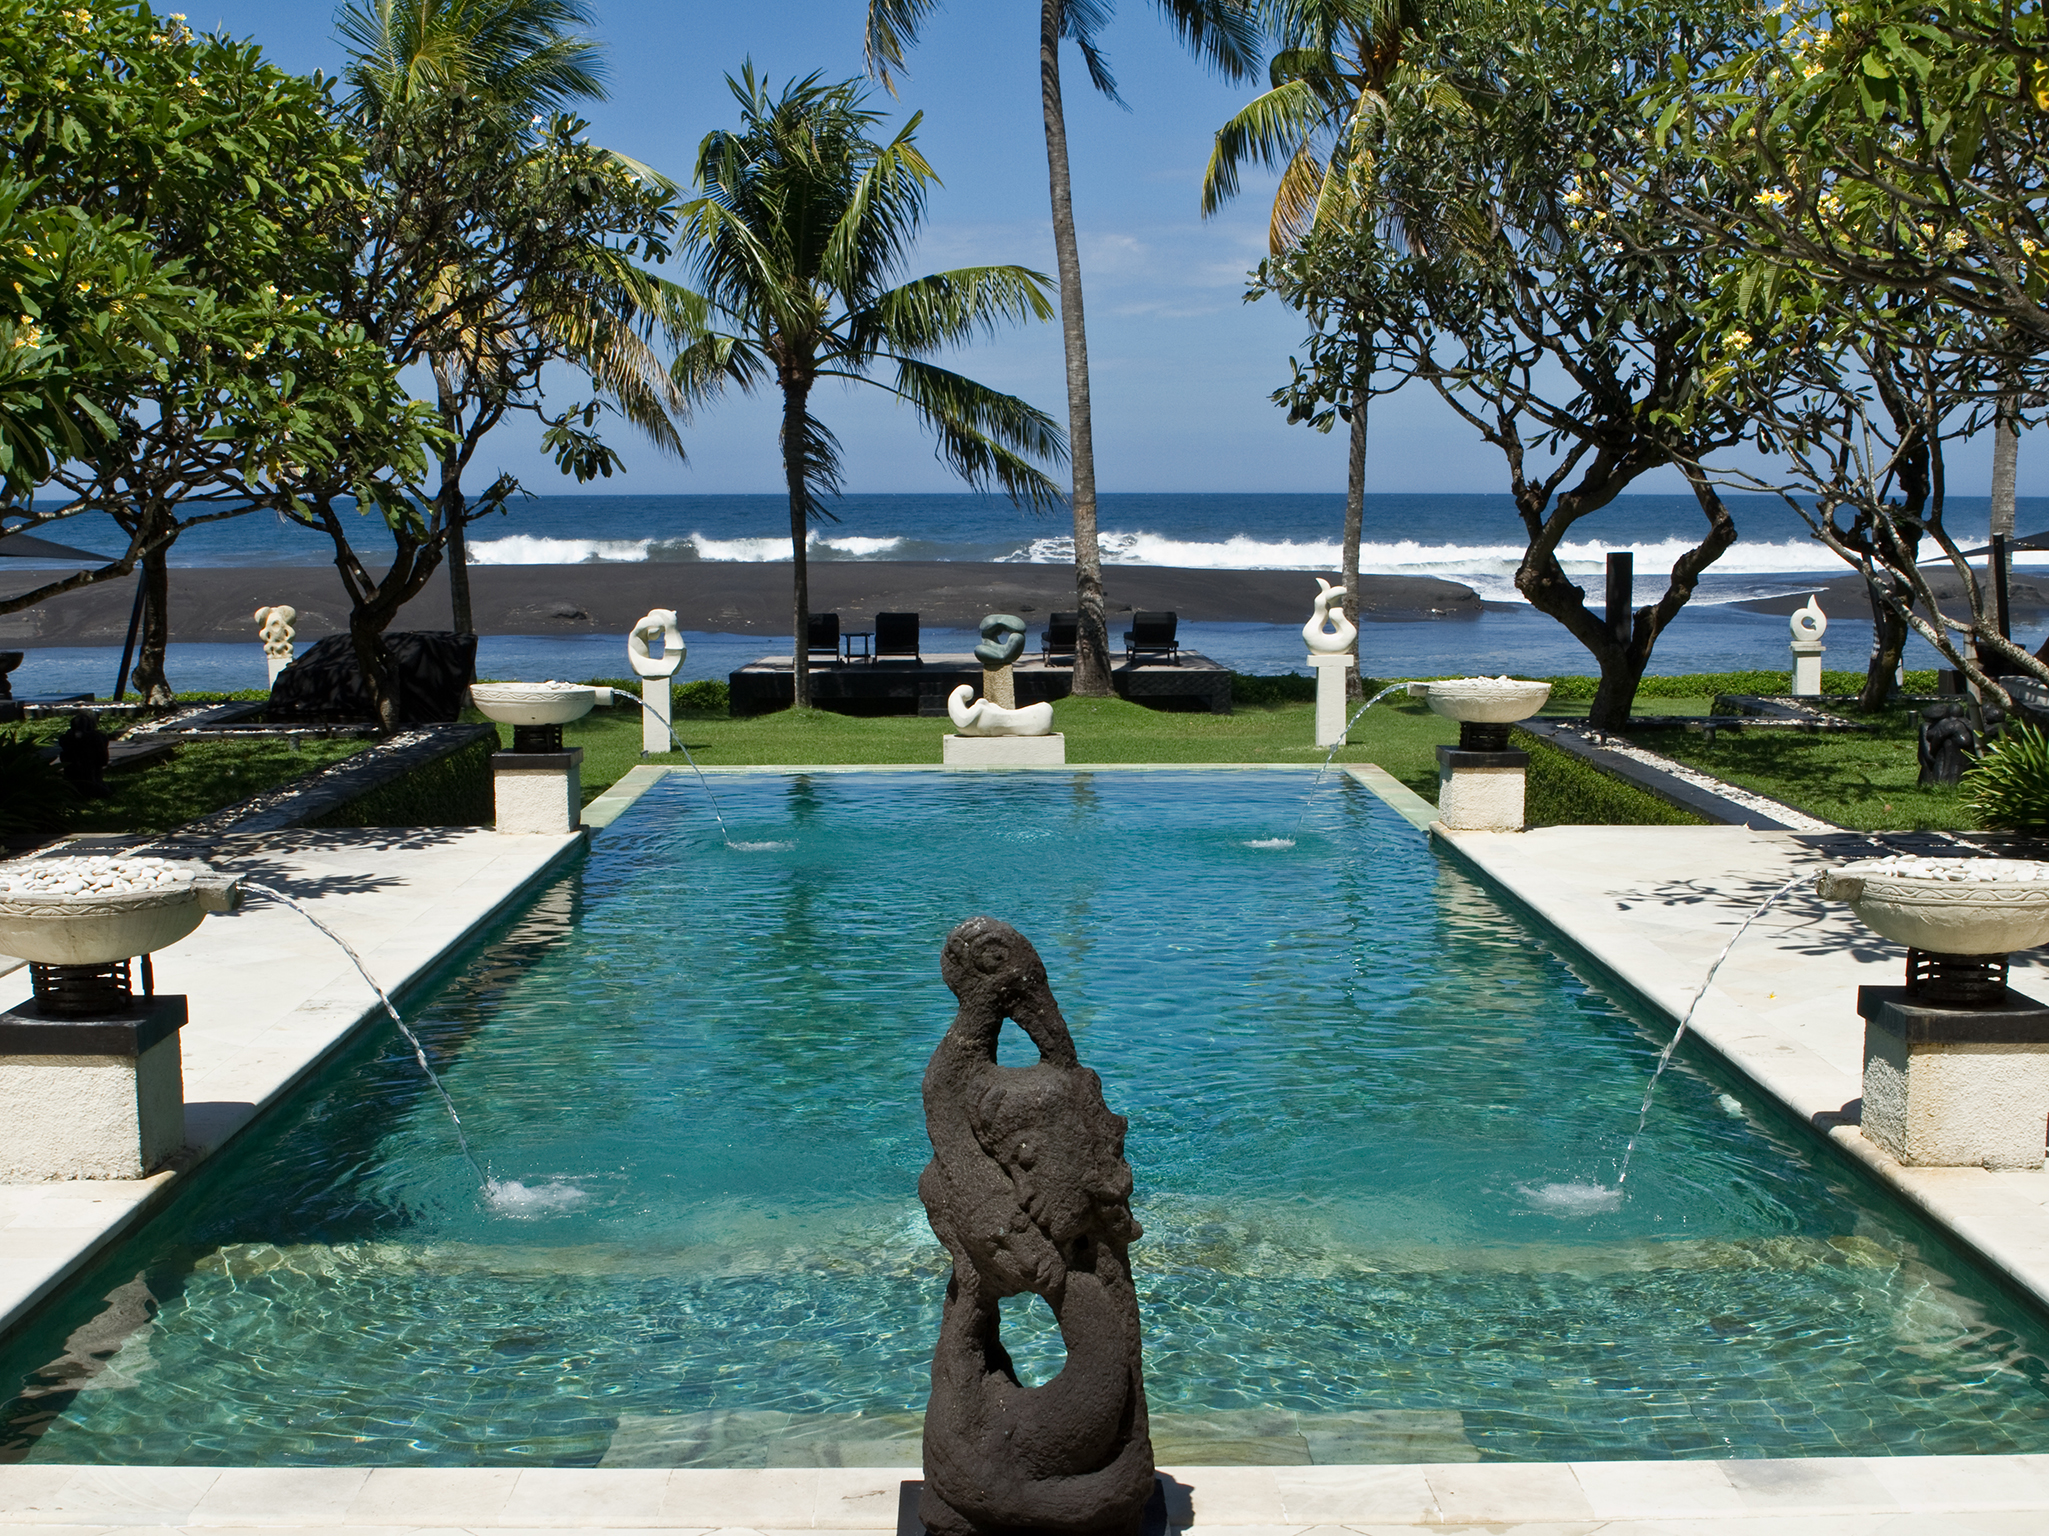 The Ylang Ylang - Private pool with a view - The Ylang Ylang, Ketewel, Bali